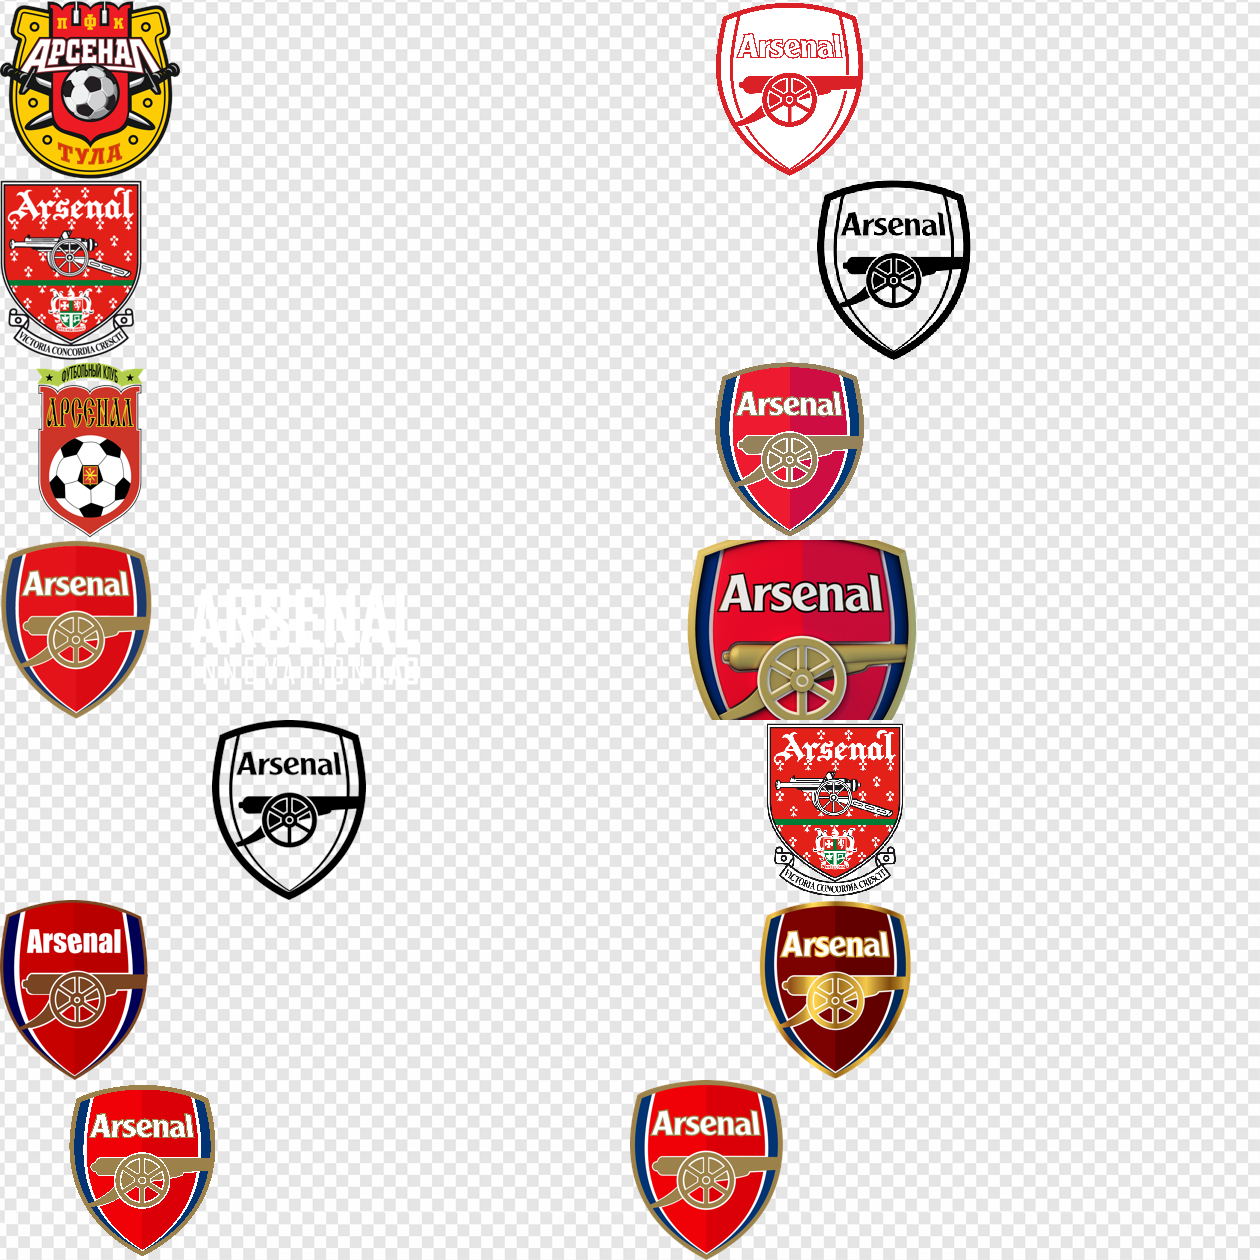 E.S.S.L. Arsenal - ESSL Arsenal